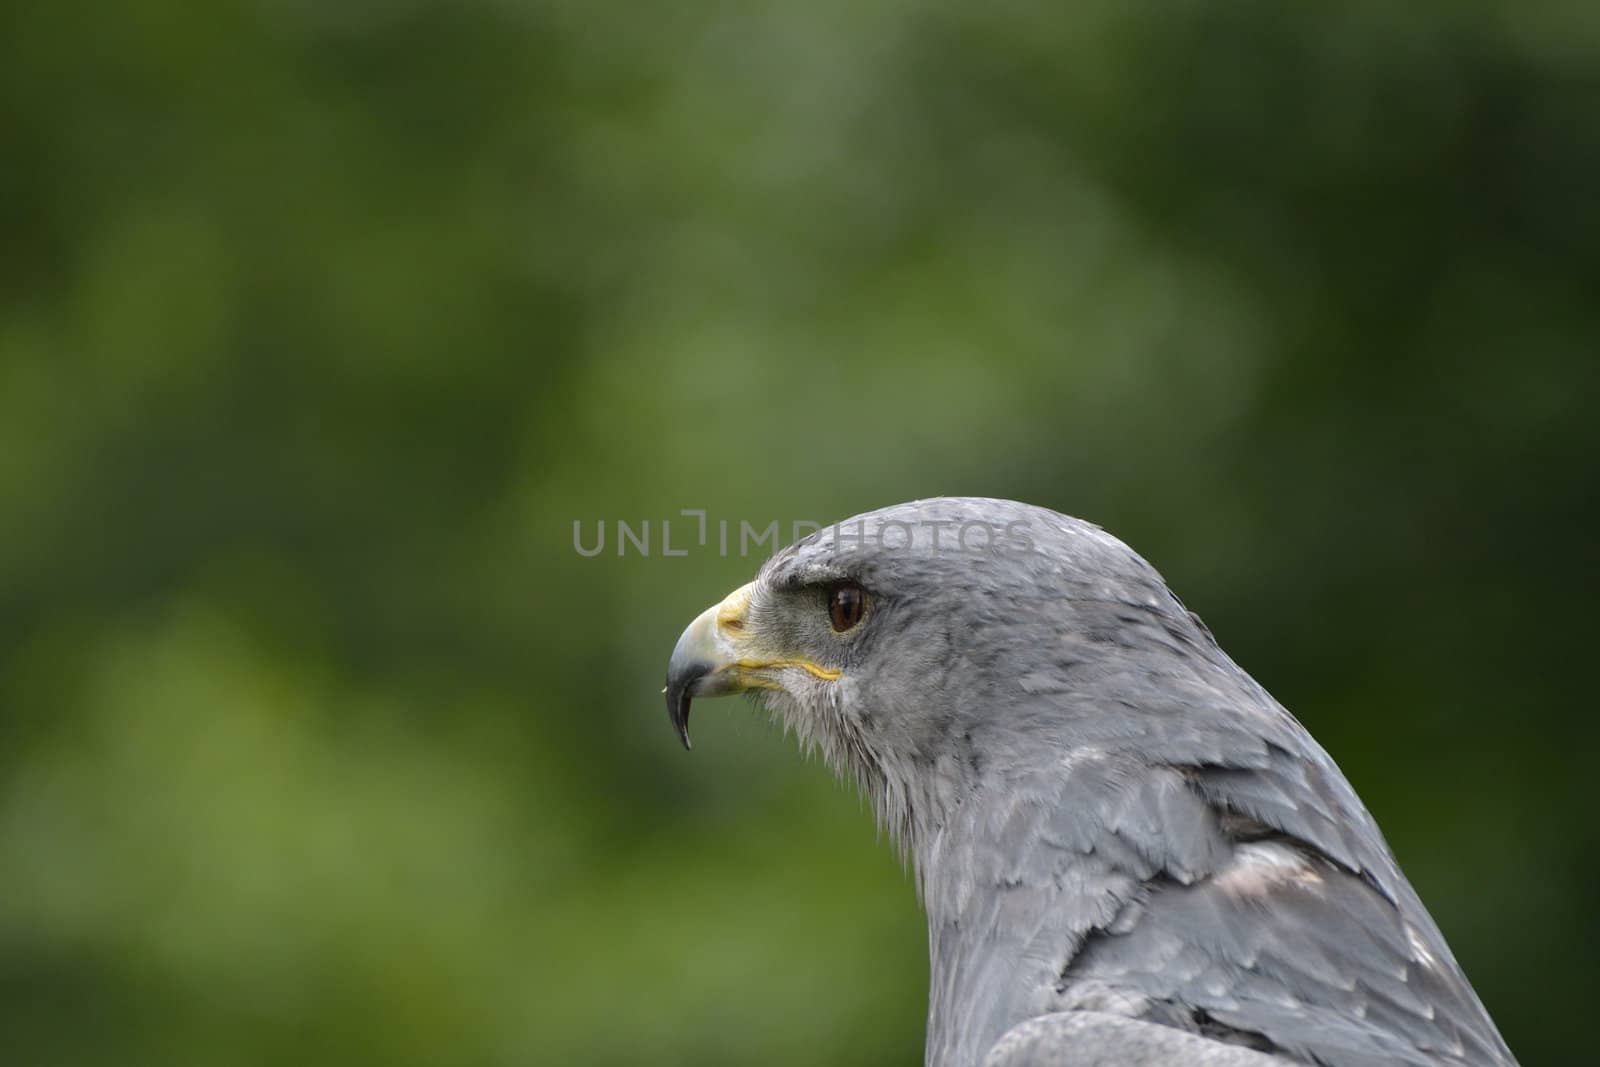 Grey Hawk in close Up